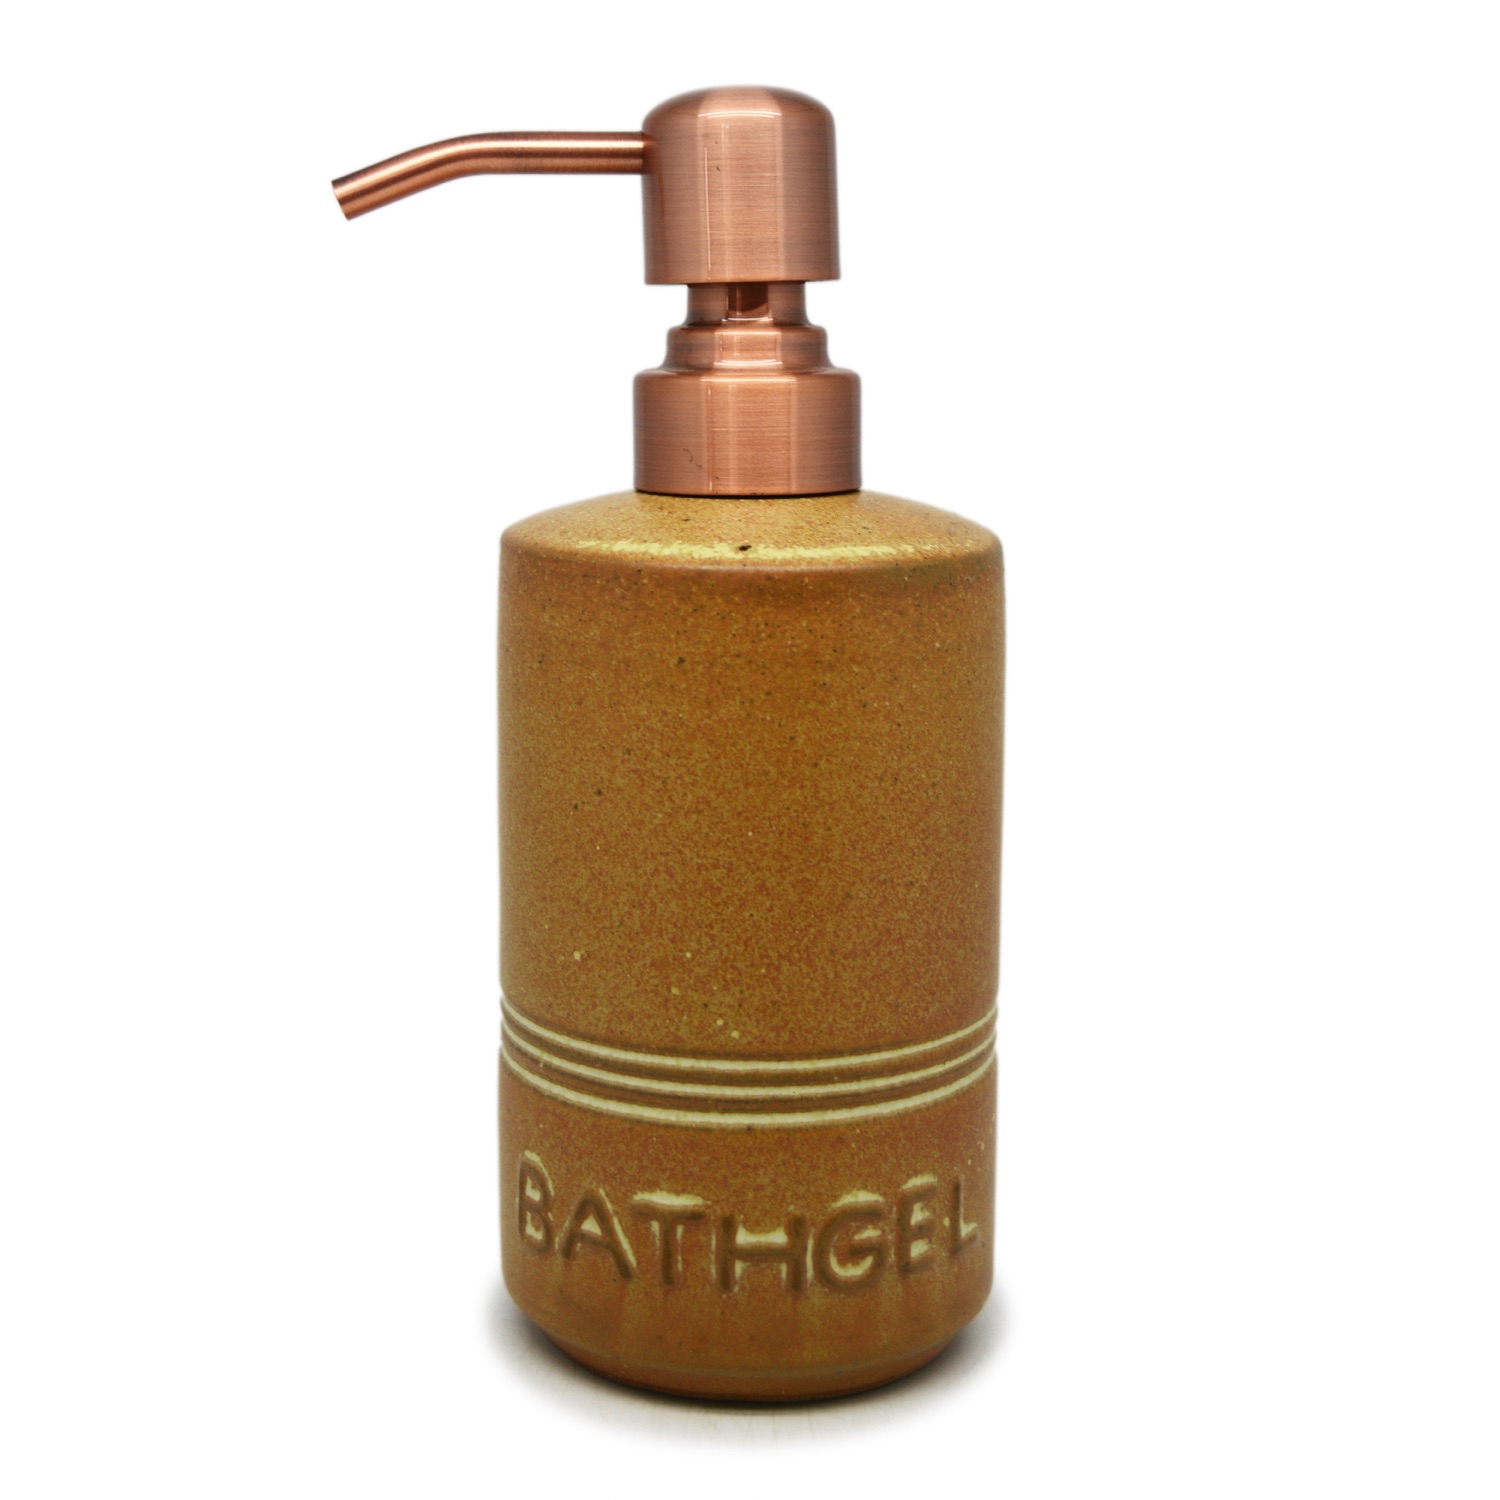 Pillar Liquid Dispenser - Bath Gel - Brass Plated Pump